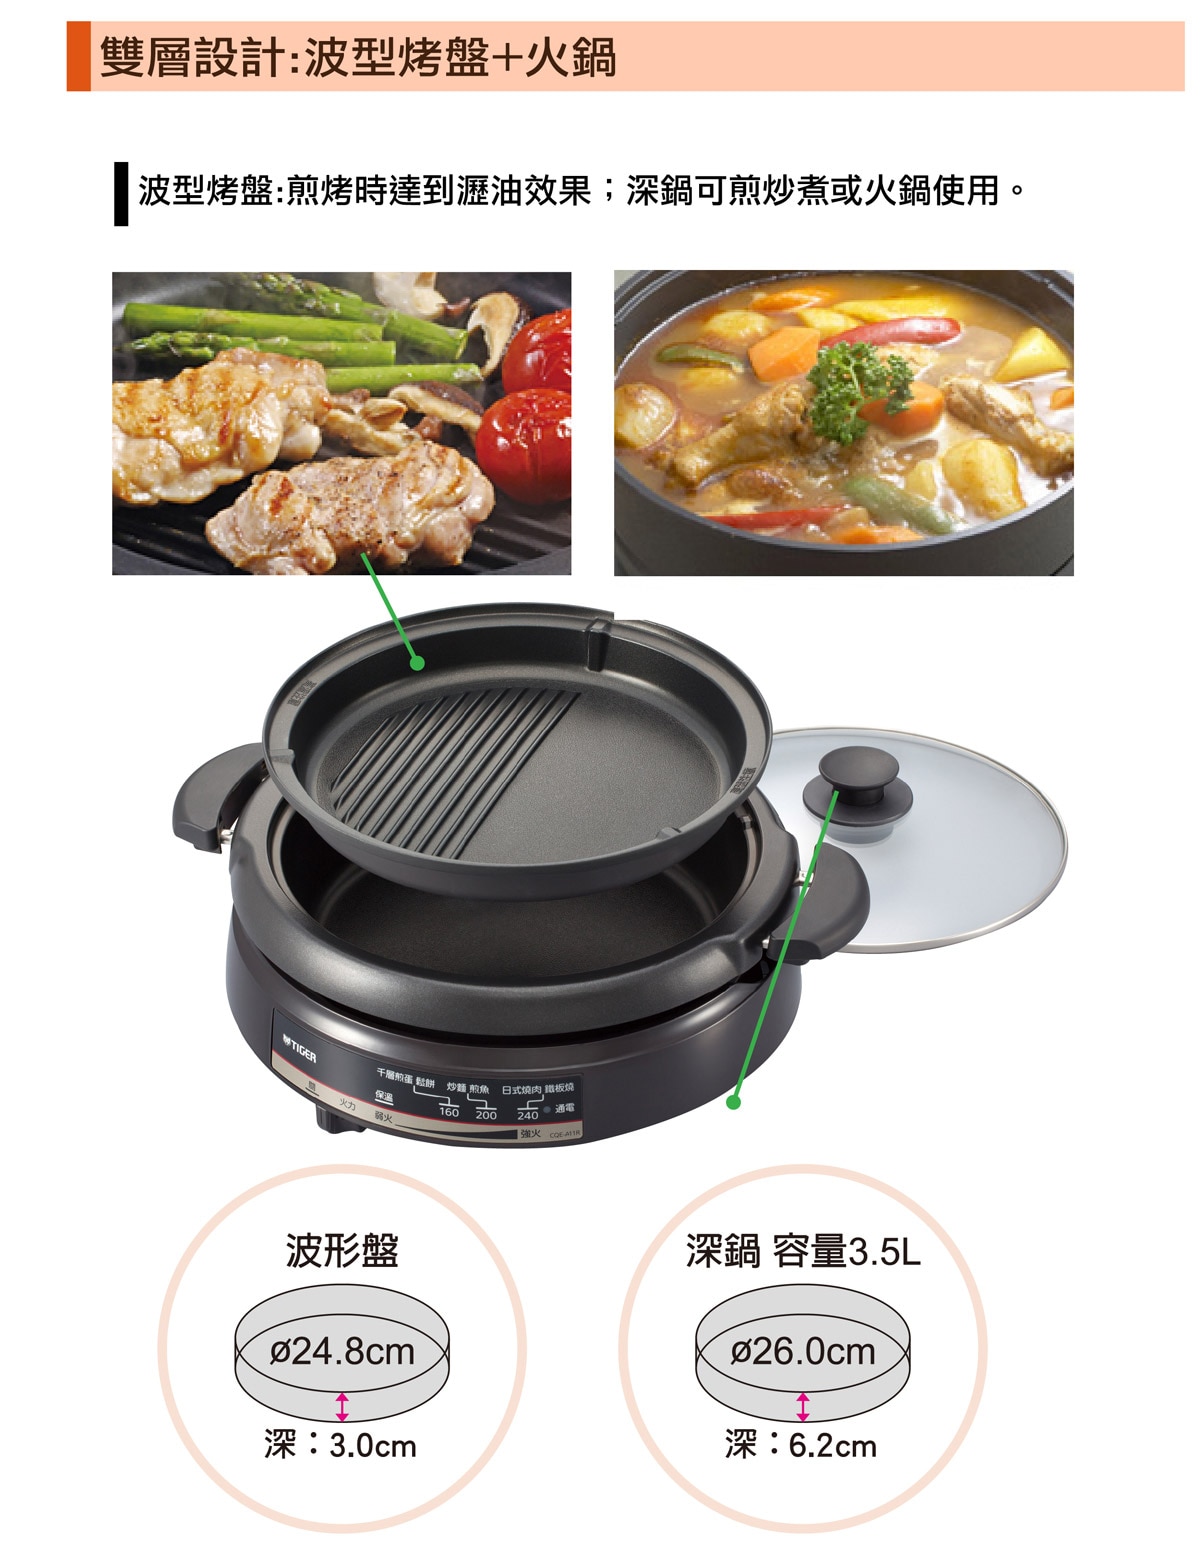 Tiger 燒烤火鍋二用組3.5公升,雙層設計,波型烤盤 + 火鍋。